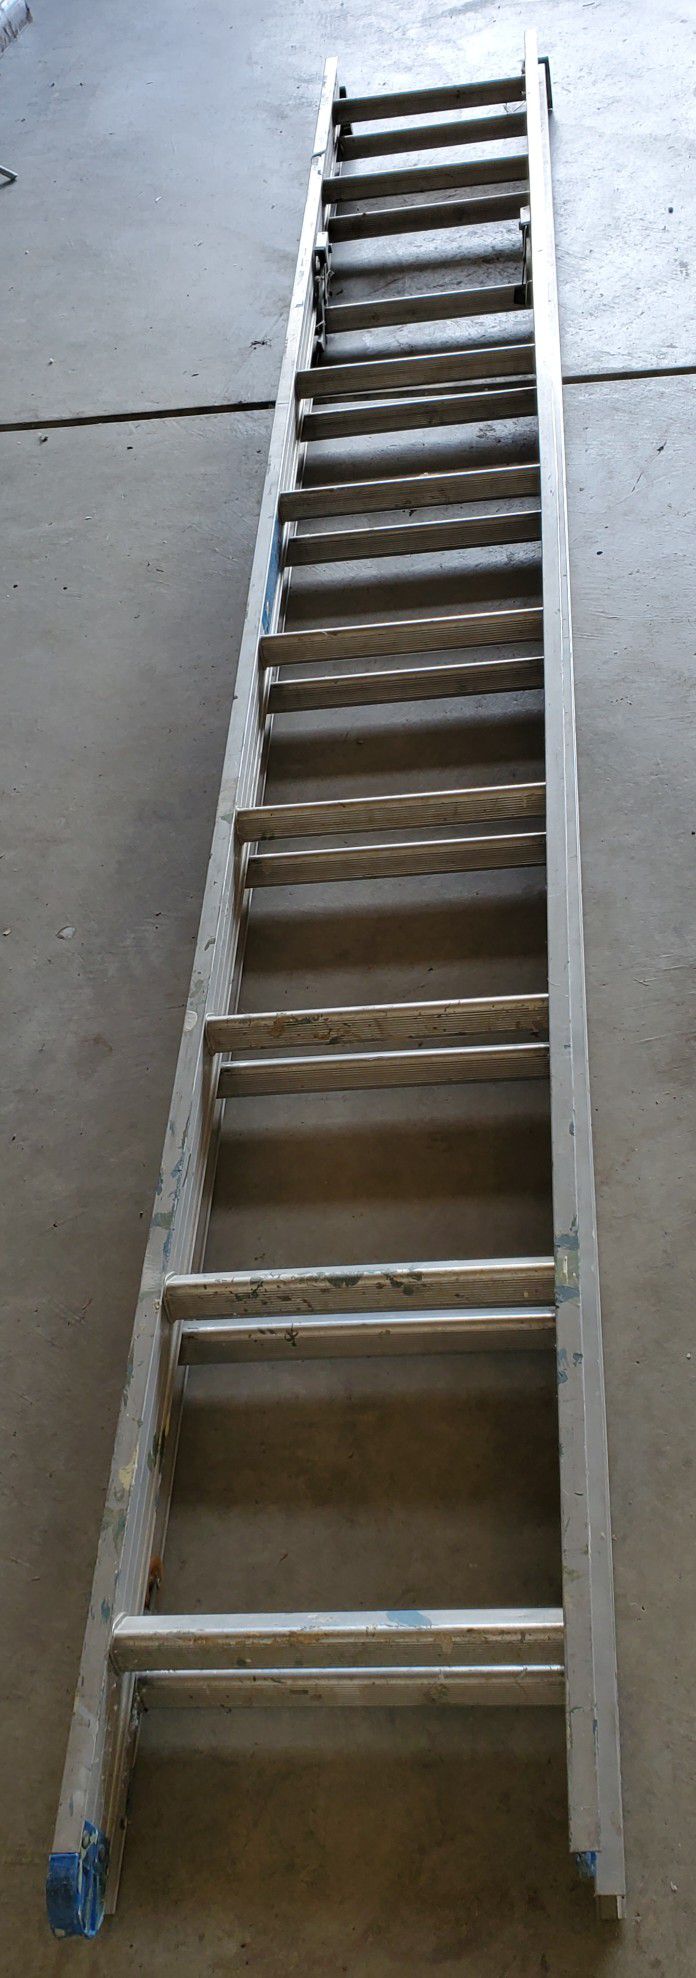 Ashby 20 Foot Aluminum Ladder